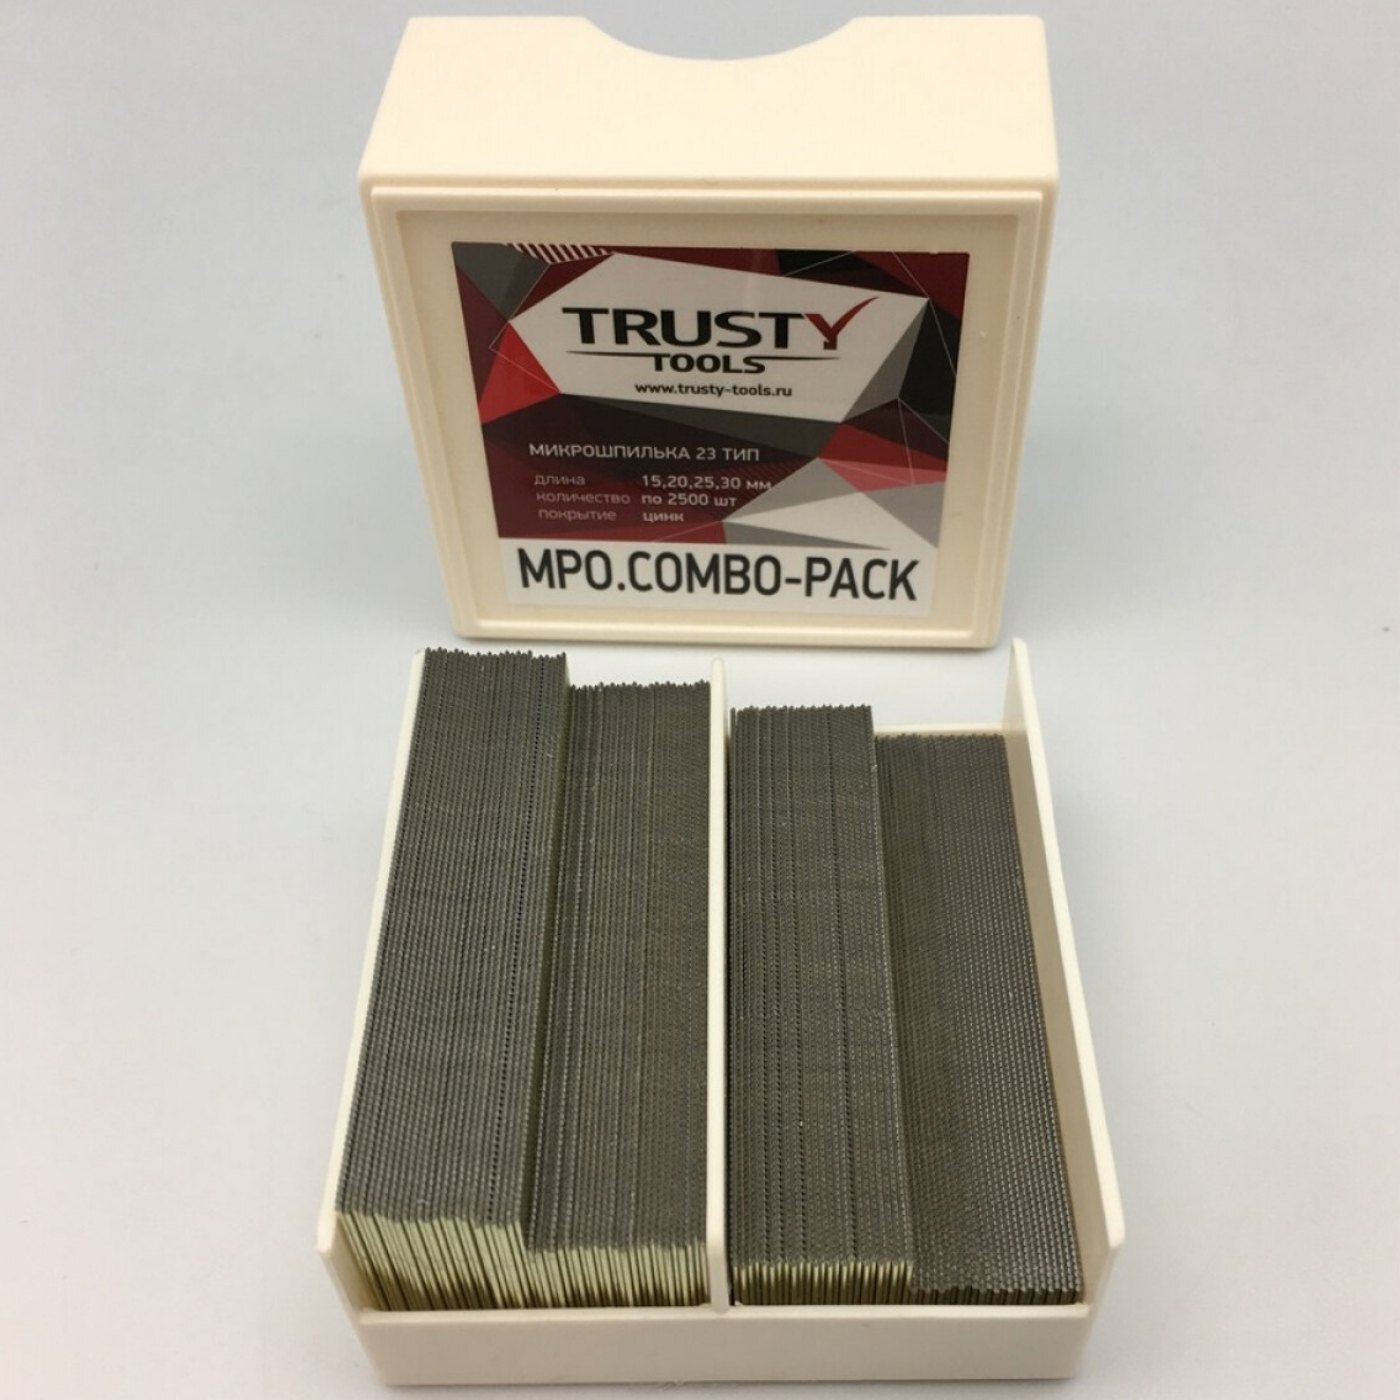 Микрошпилька Trusty MPO.COMBO-PACK 15, 20, 25, 30 мм тип 23, MB 10000 шт